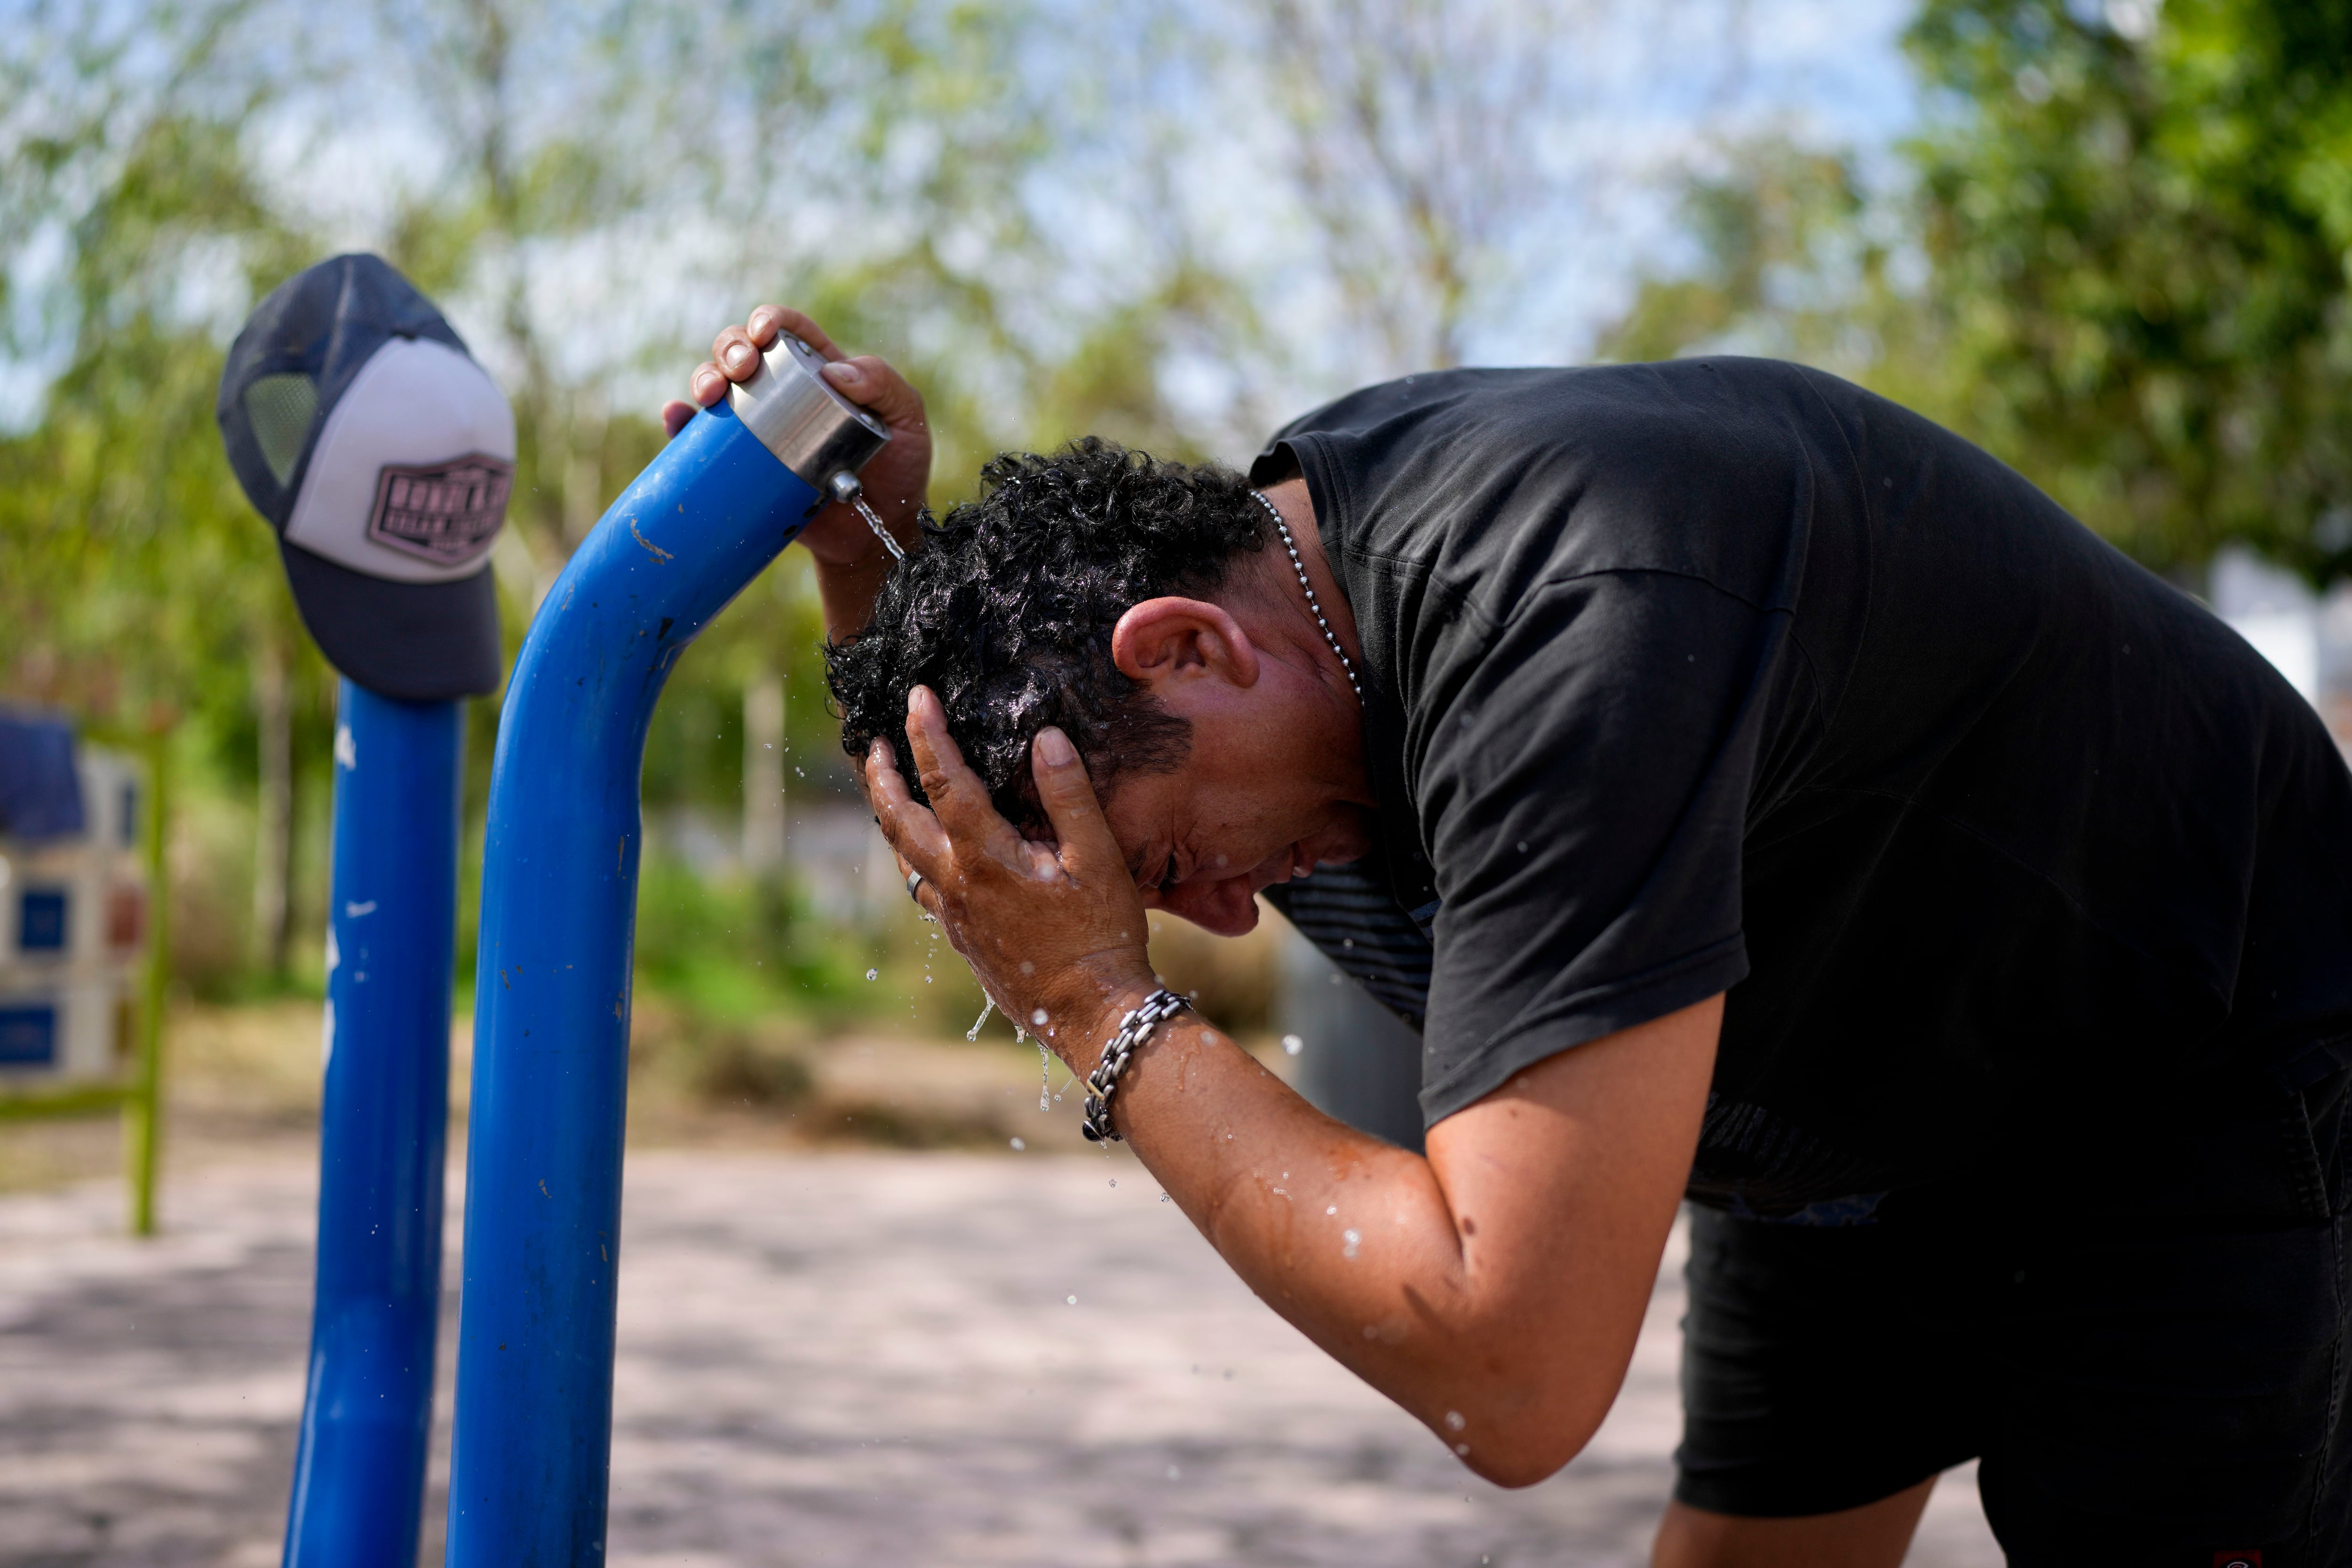 Ante el calor extremo, es recomendable evitar exponerse al sol e hidratarse constantemente. (Foto: AP/Natacha Pisarenko)